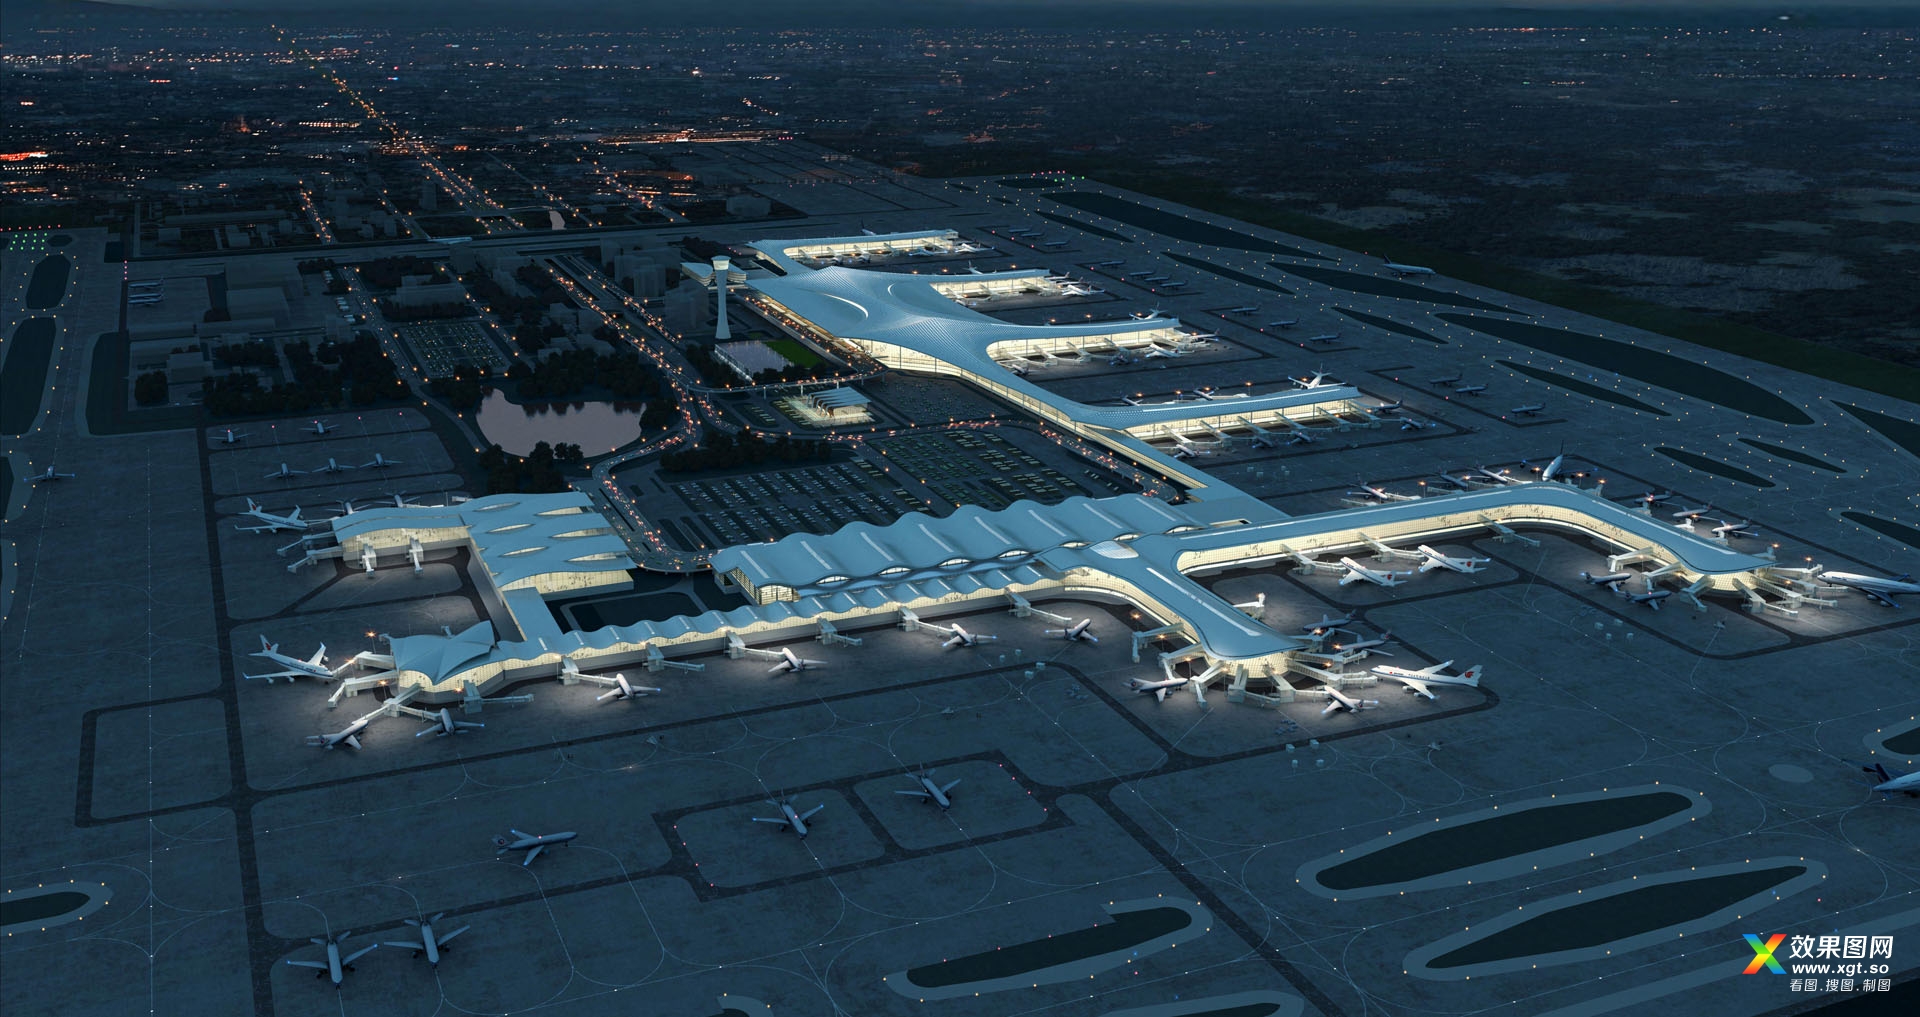 杭州萧山国际机场新建航站楼方案设计及陆侧核心区总体概念方案